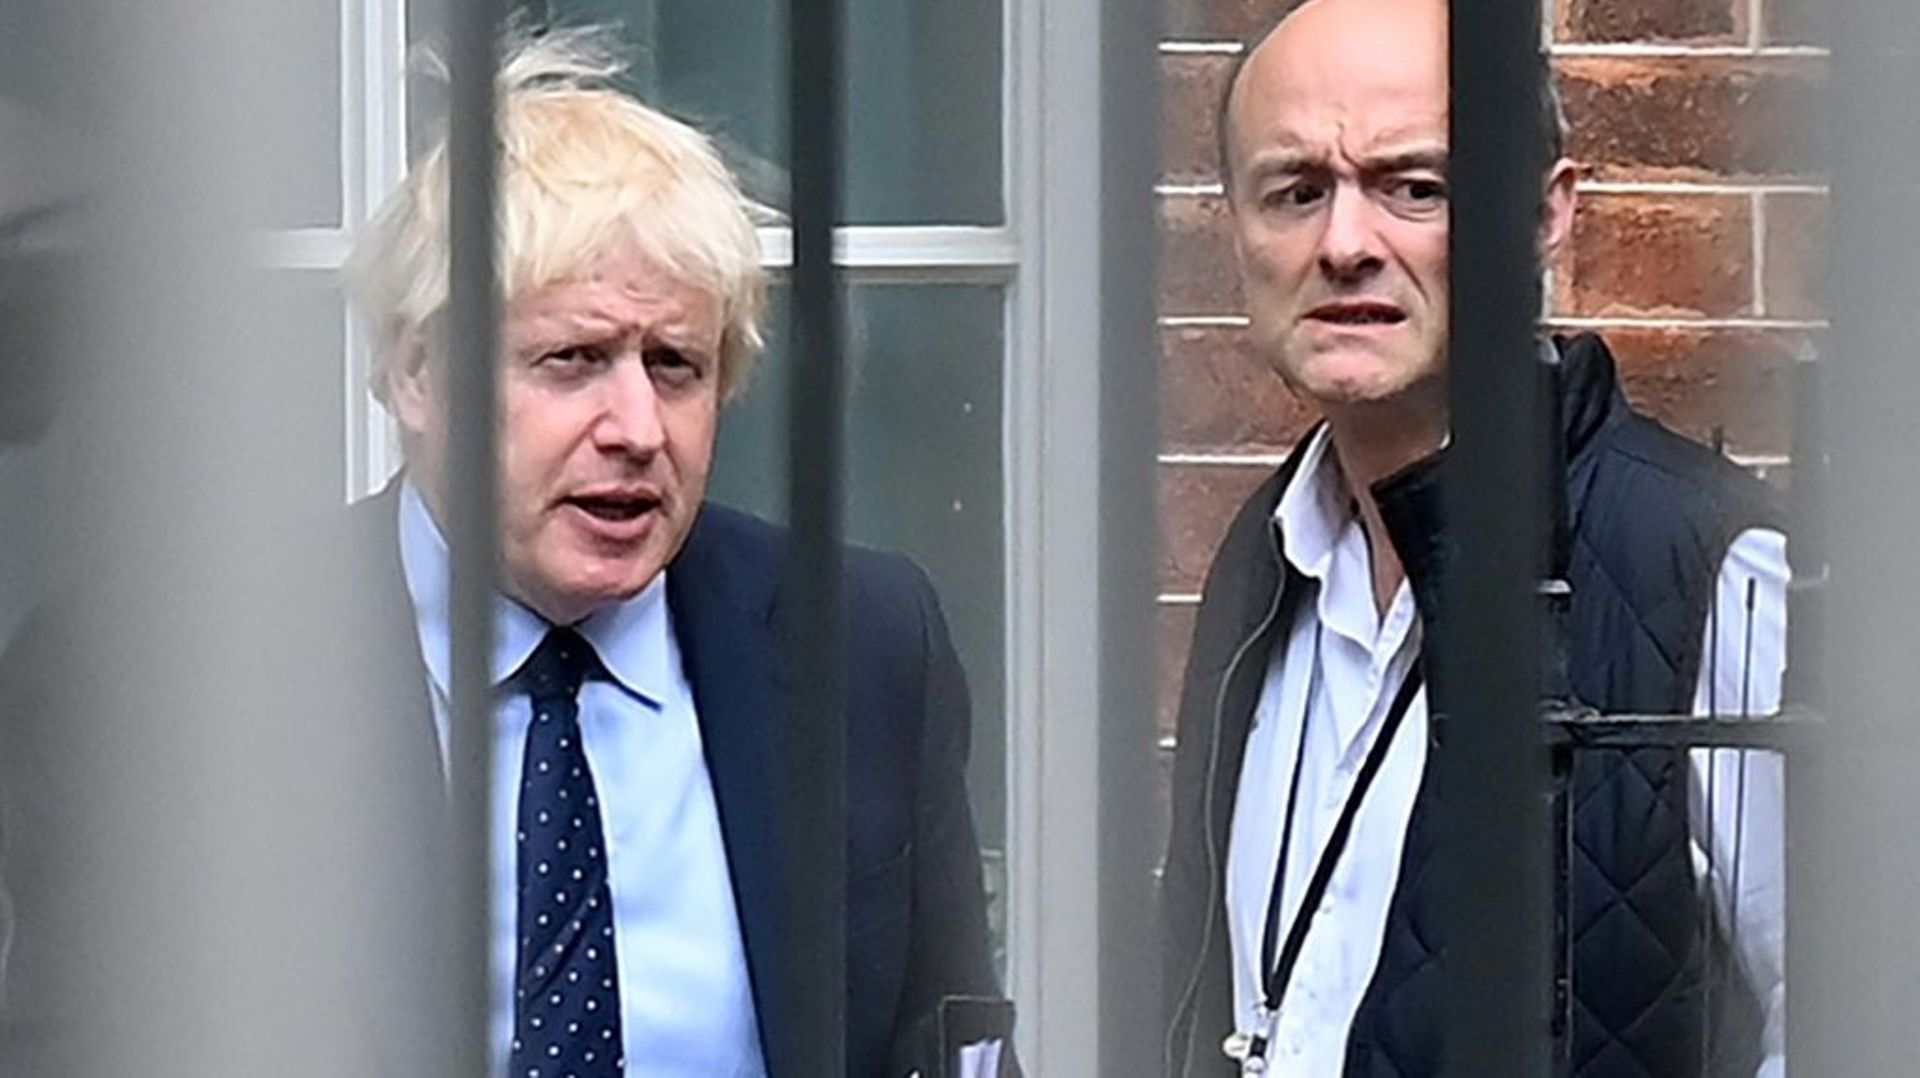 Le Premier ministre britannique Boris Johnson et son ancien conseiller Dominc Cummings le 3 septembre 2019 à Downing Street, le siège du gouvernement